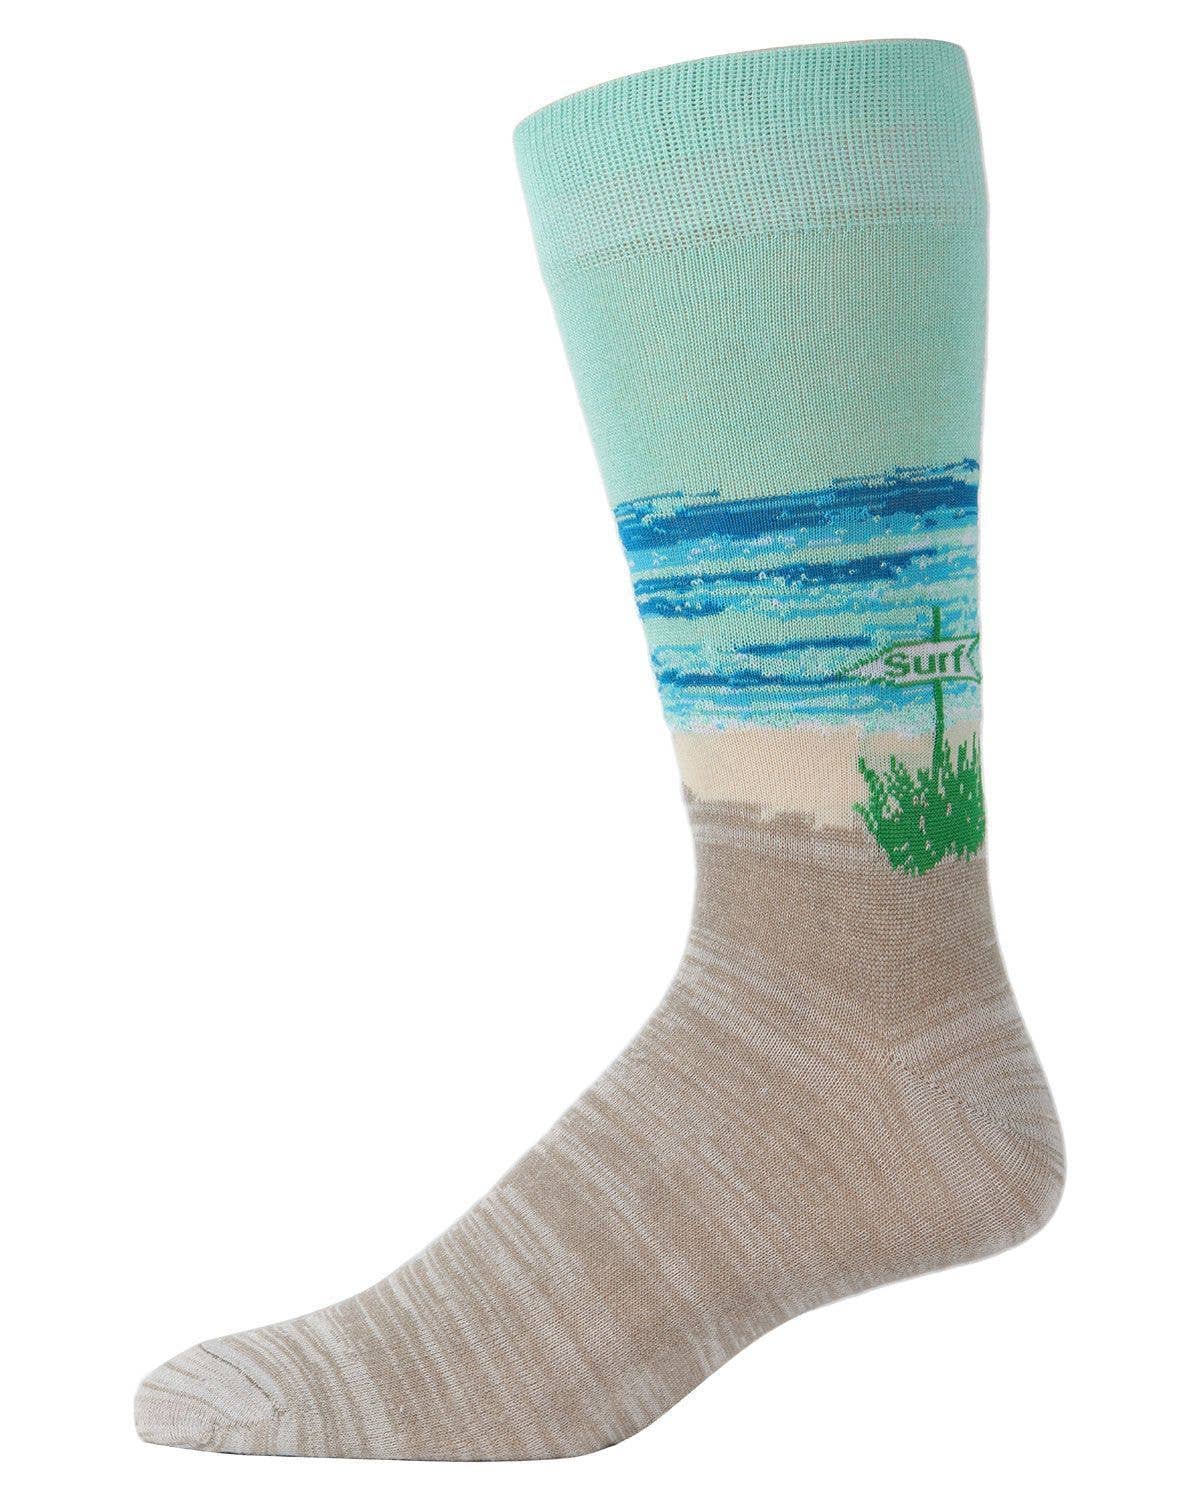 Infinity Classics - MeMoi Surf's Up Bamboo Blend Men's Crew Socks: Men's 10-13